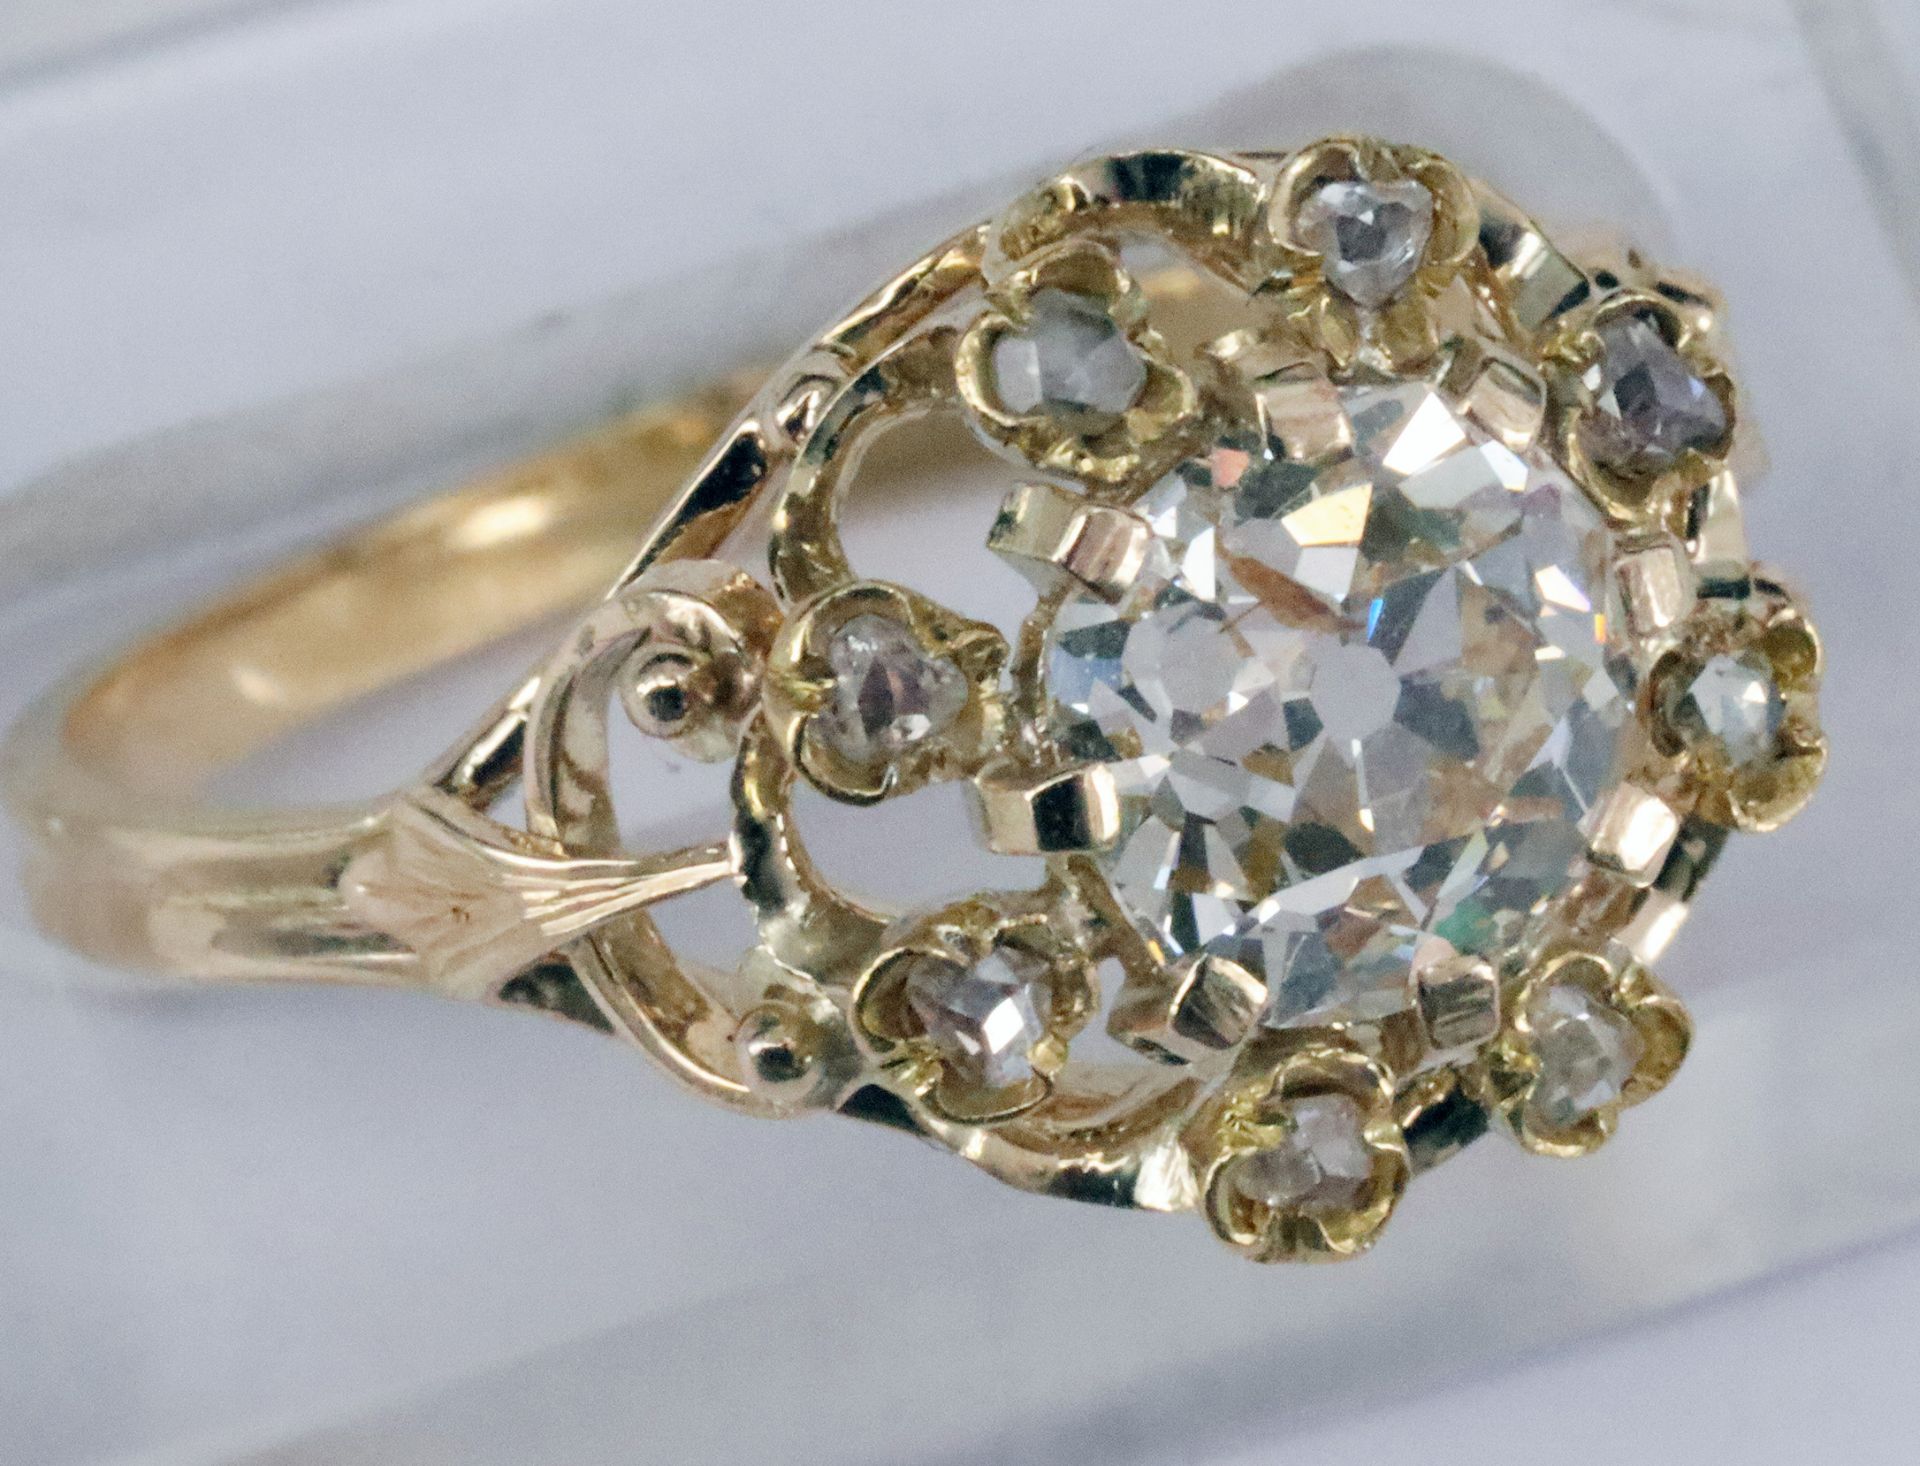 Ring, 585er GG, mit großem Altschliff-Diamanten, ca. 0,75 mm, ca. 1,5 ct, p, Stein mit Riss bzw.